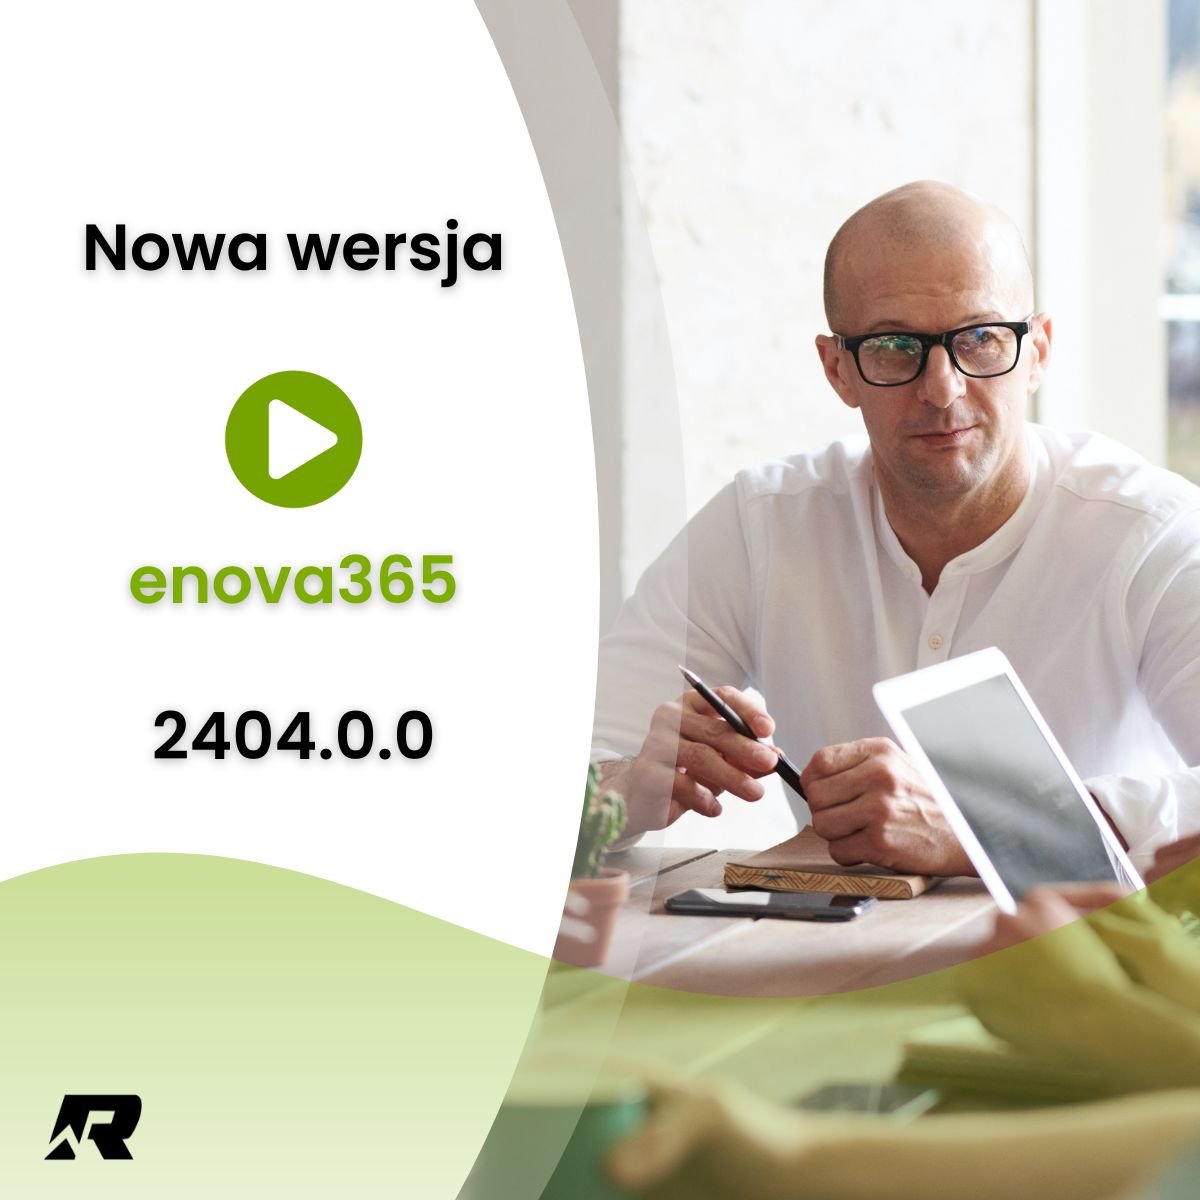 Nowa wersja enova365 2404.0.0 jest już dostępna! 